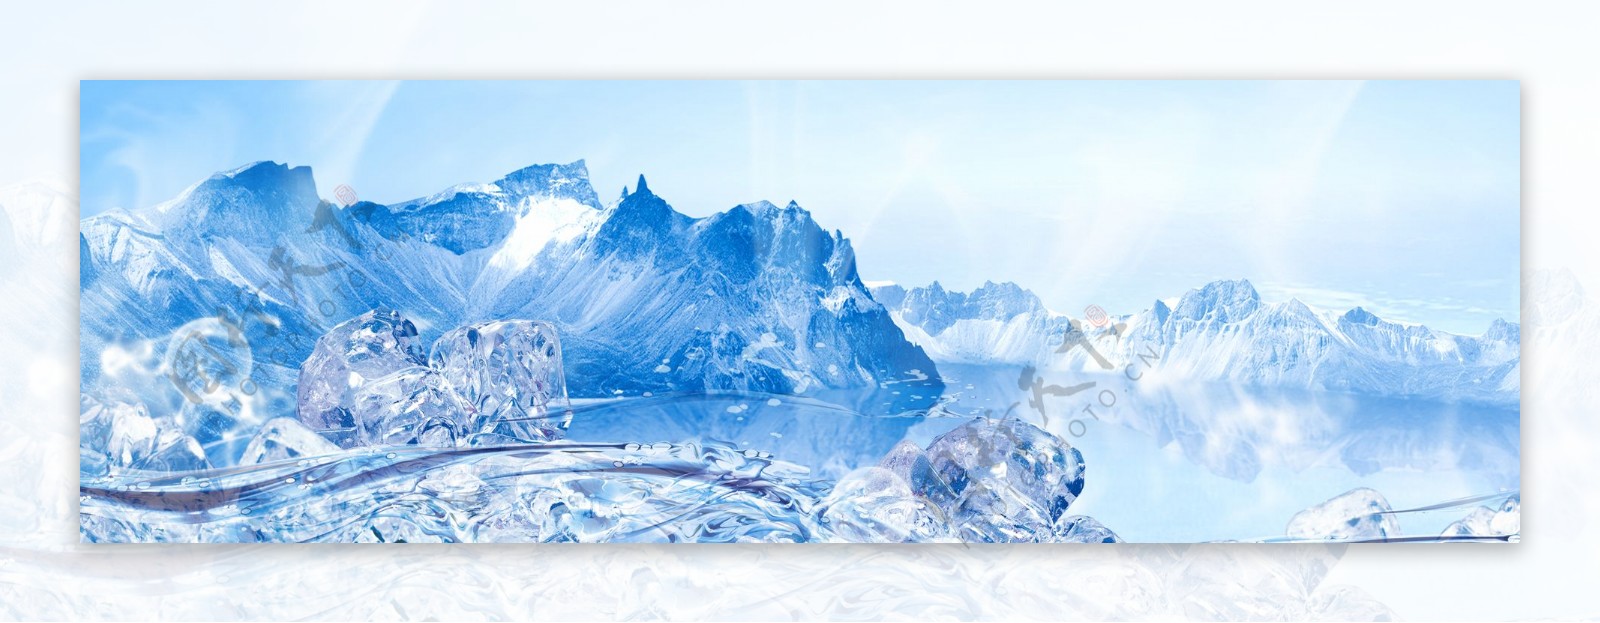 冰块冰山广告背景